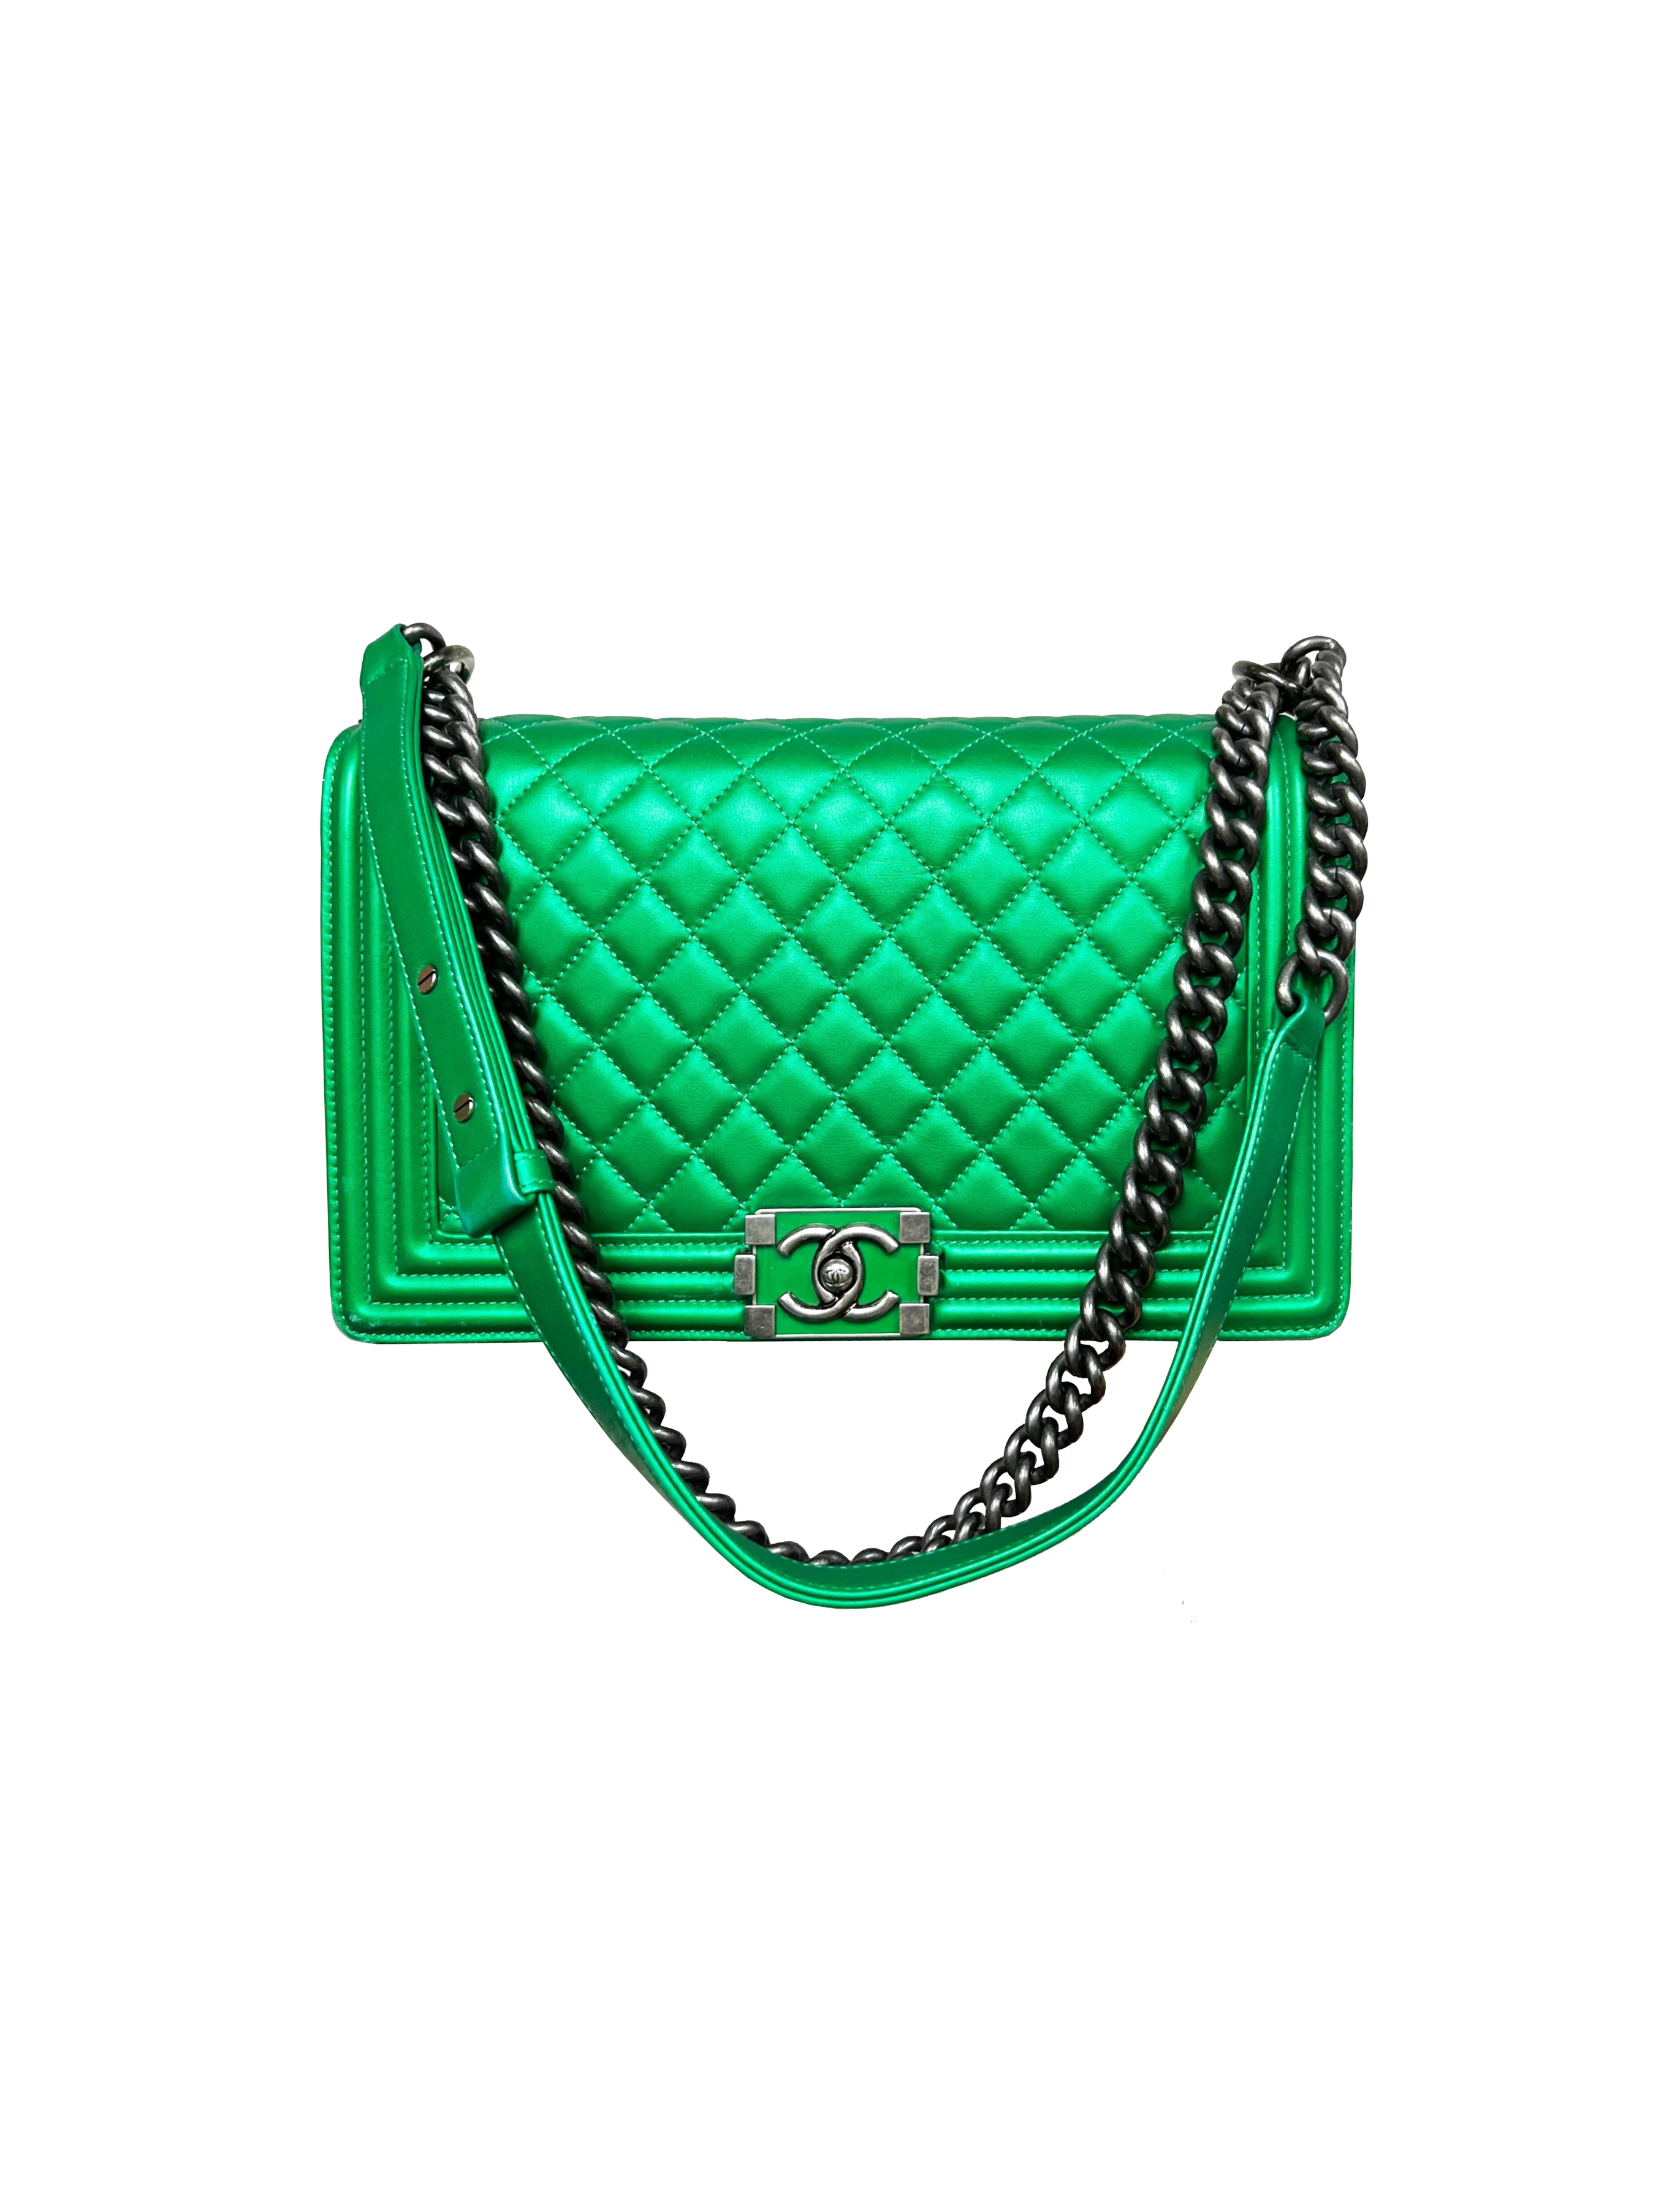 Chanel Lime Green bag